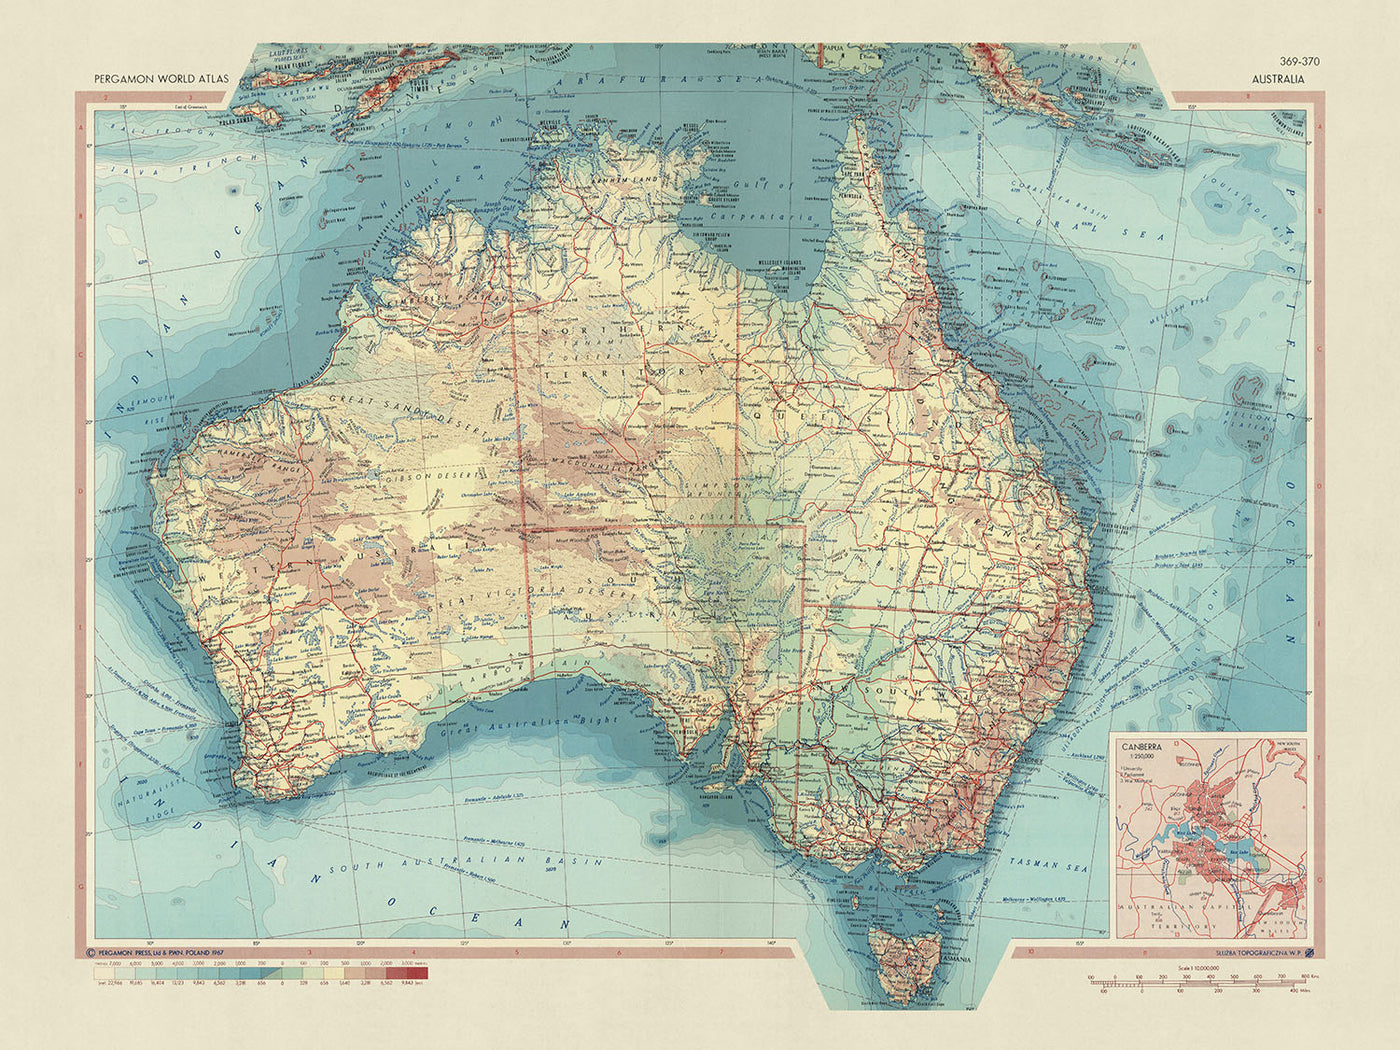 Alte Karte von Australien vom polnischen Topographiedienst der Armee, 1967: Detaillierte politische Grenzen, vielfältige physische Topographie, vielfältige Naturlandschaften, sorgfältige Handwerkskunst, umfassende geografische Darstellung